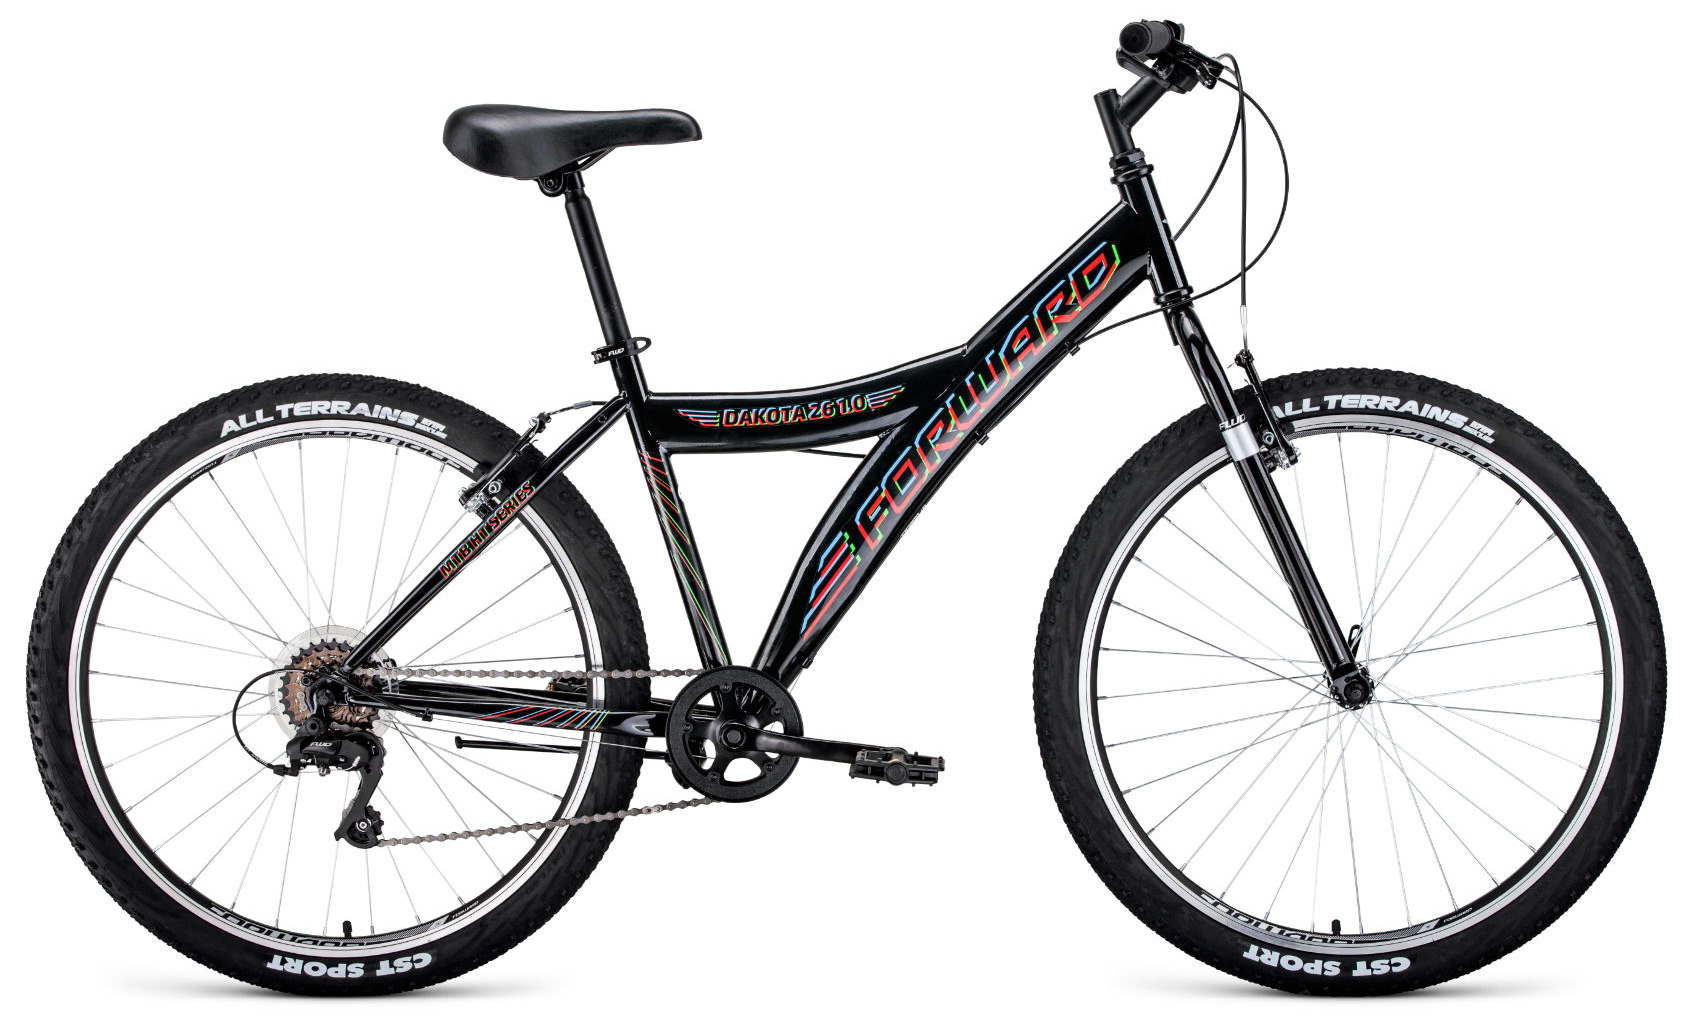  Отзывы о Горном велосипеде Forward Dakota 26 1.0 2021